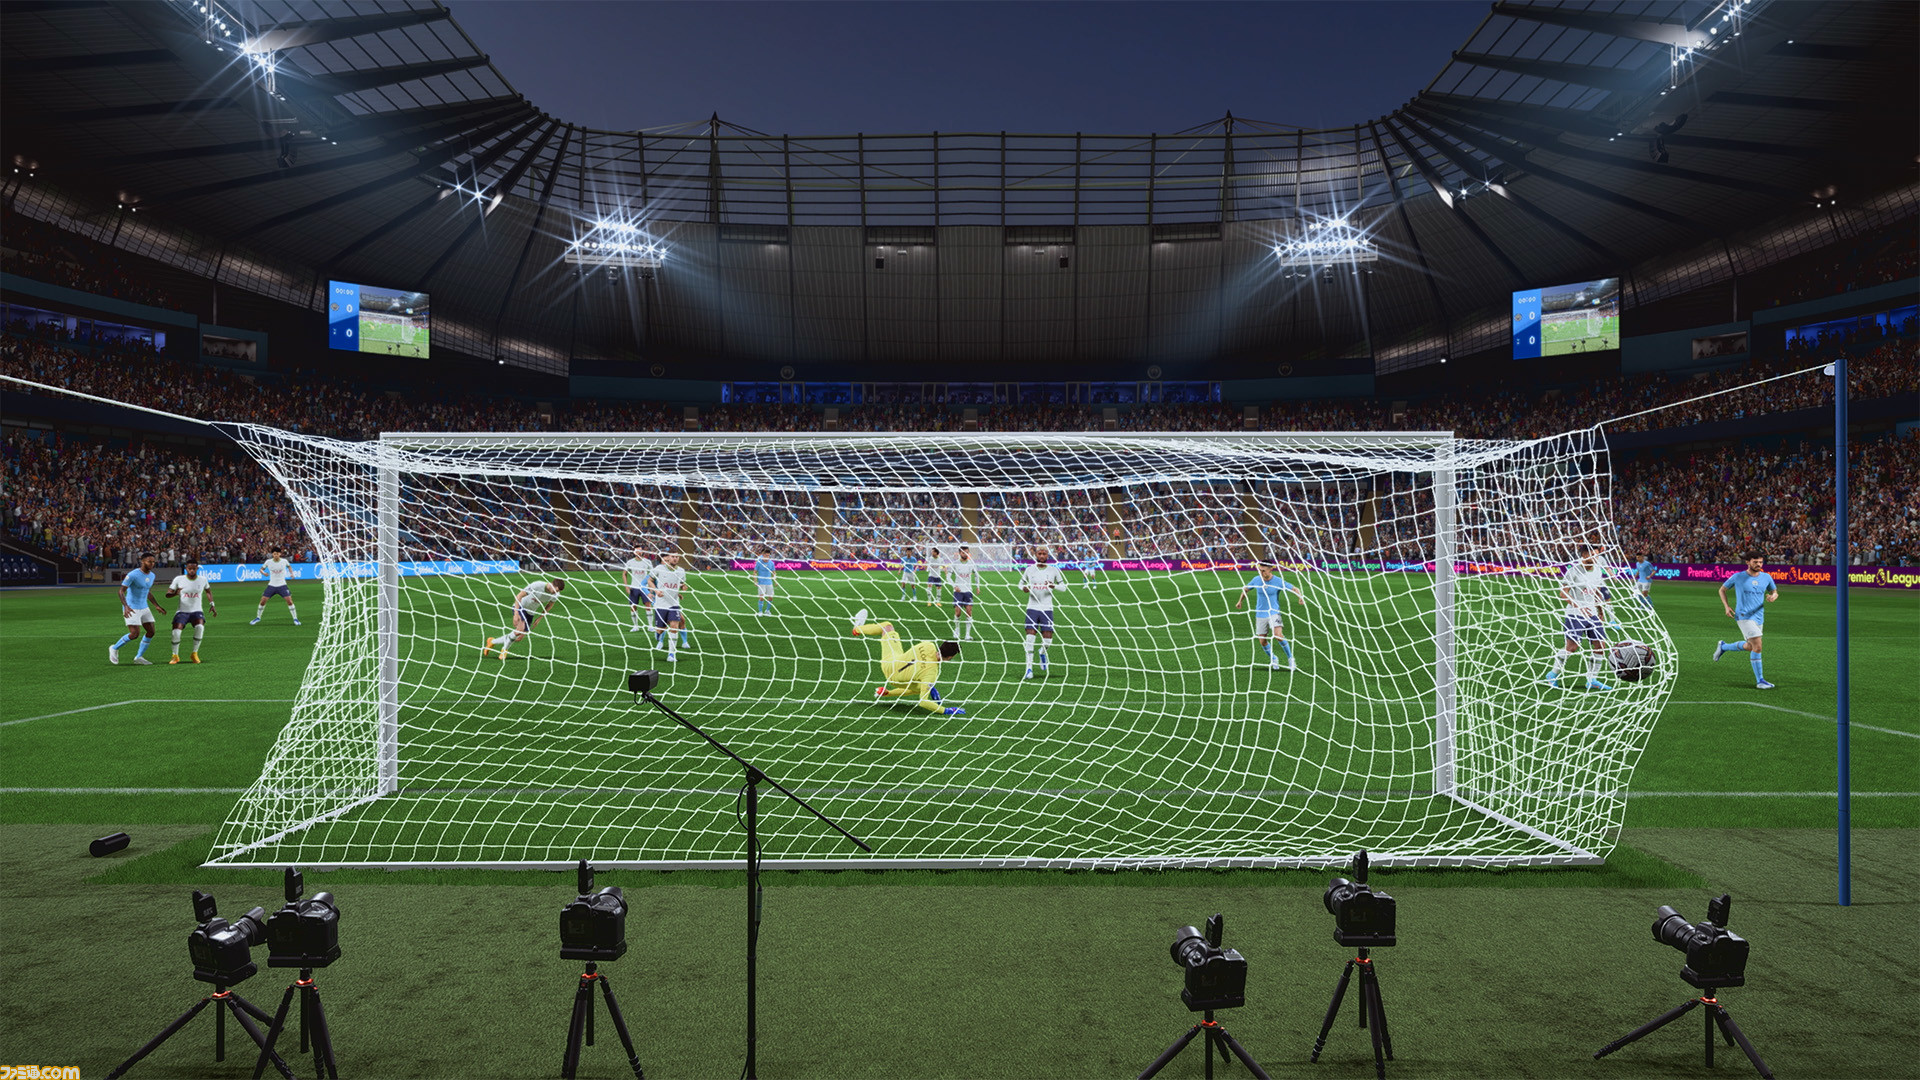 Fifa 23 スライディング痕が残るようになった芝生や3dで表現されるようになったネットなど ビジュアル面の新要素が公開 ゲーム エンタメ最新情報のファミ通 Com